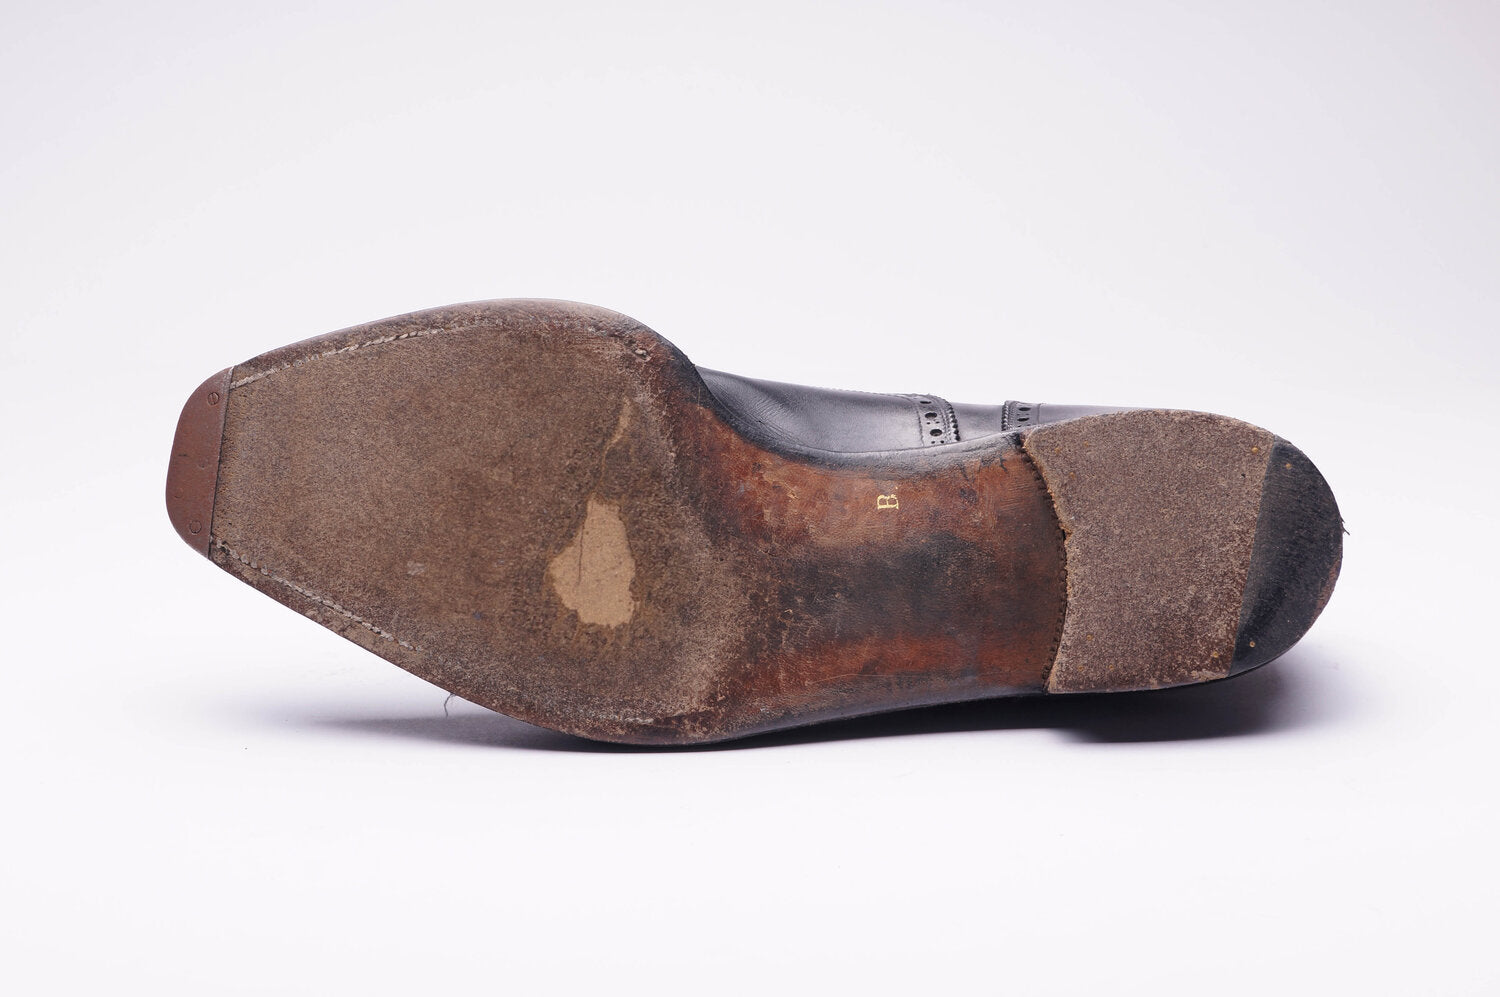 Well-worn Shoe Sole